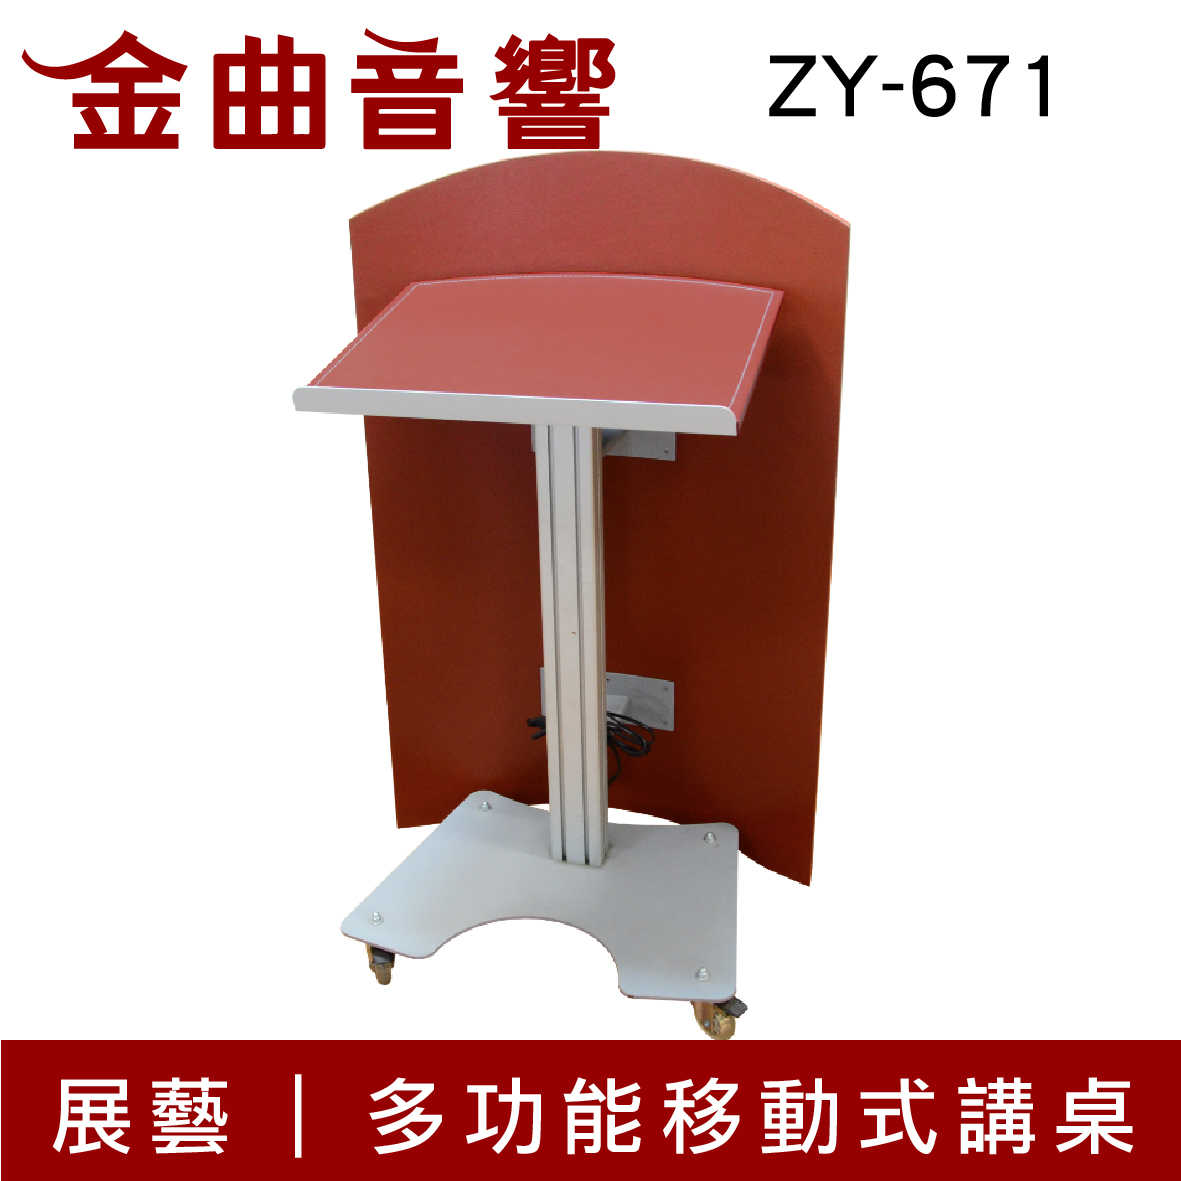 展藝 ZY-671 多功能 移動式 講桌 | 金曲音響